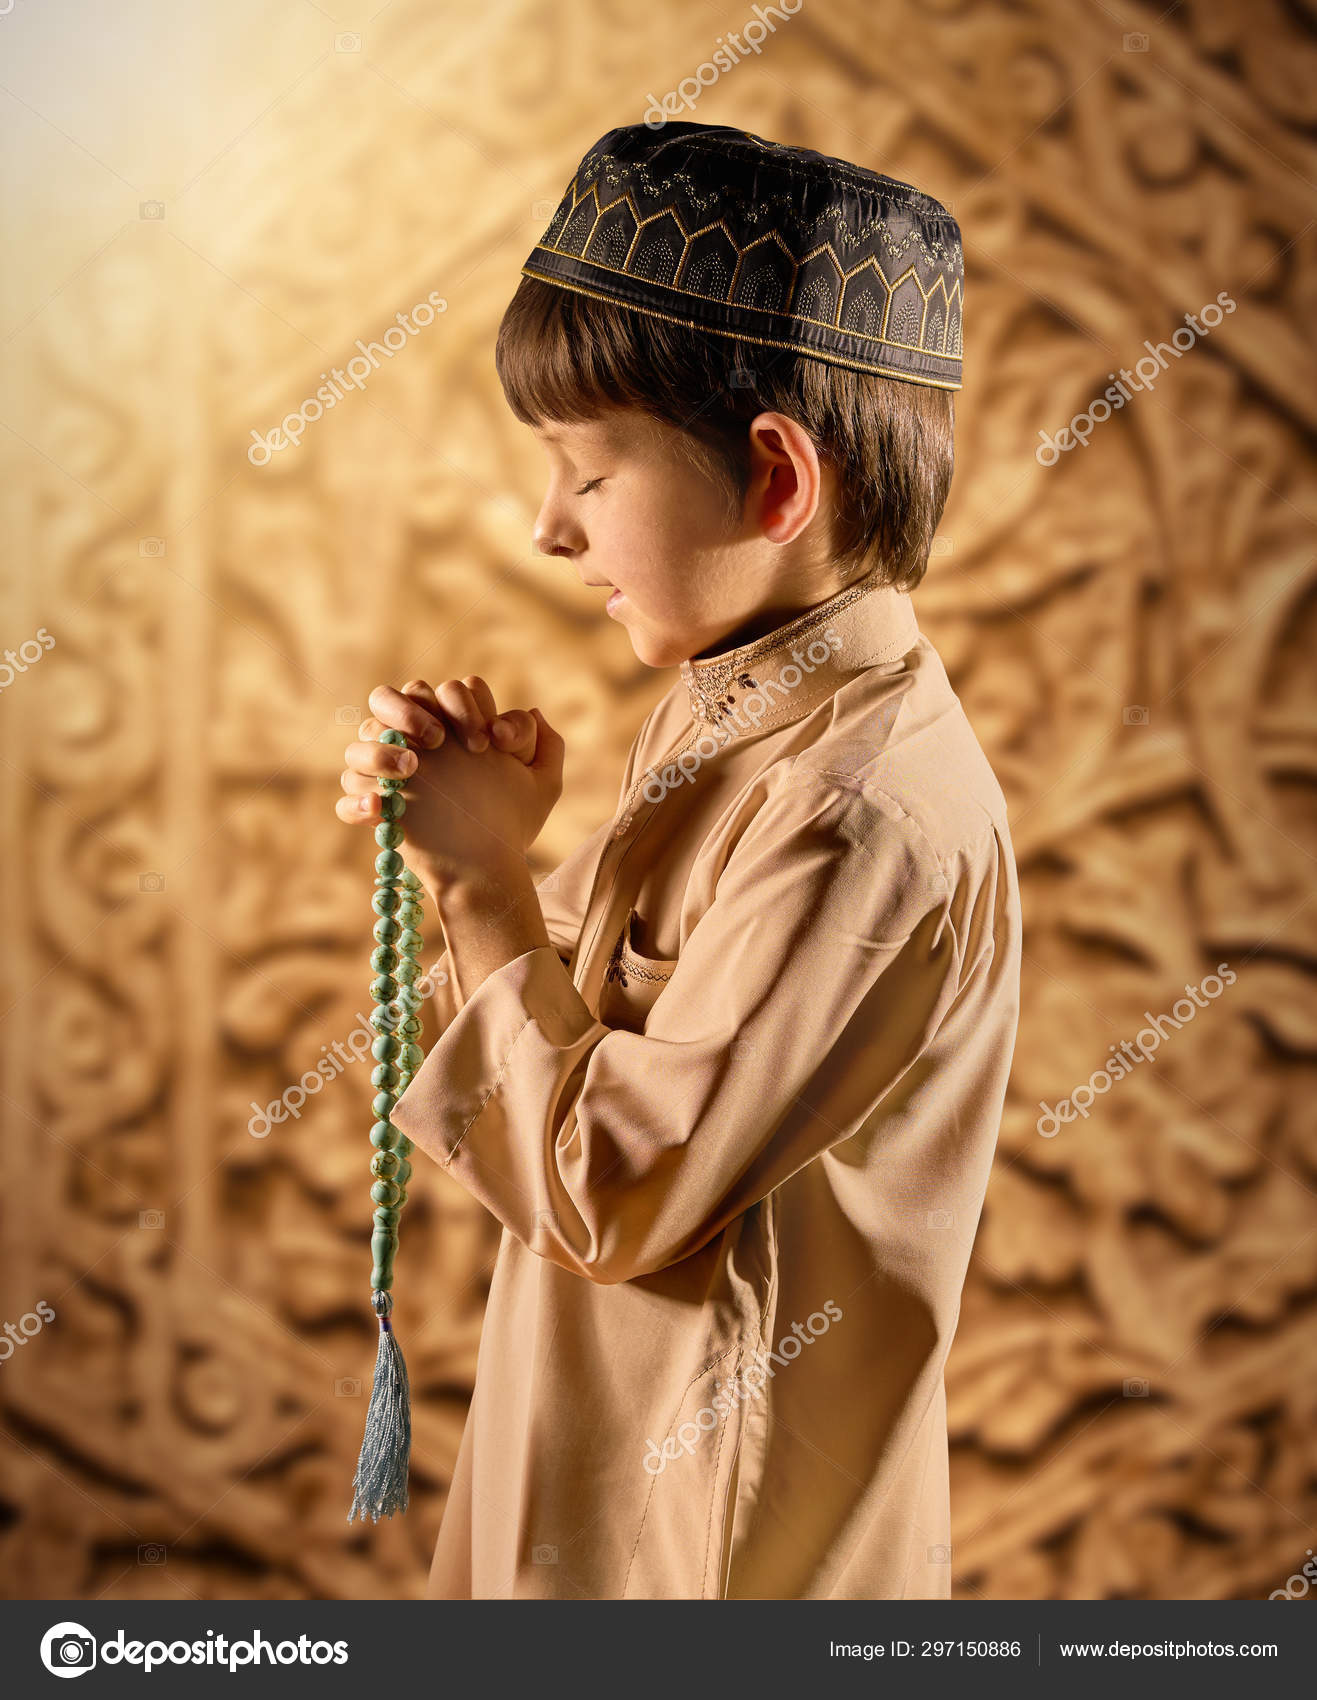 Muslim boy praying Stock Photos, Royalty Free Muslim boy praying Images |  Depositphotos